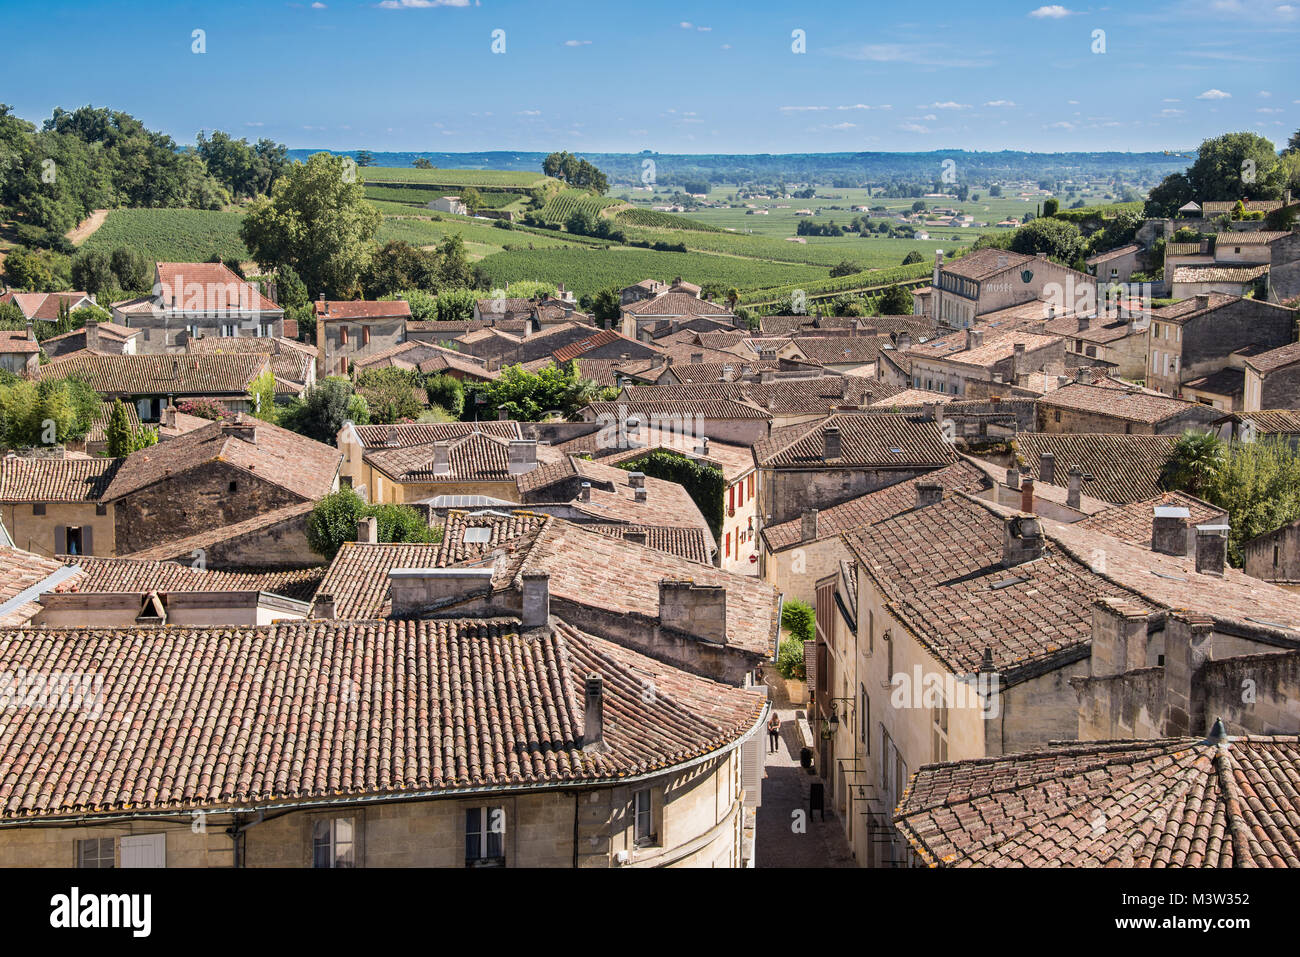 Village of Saint Emilion, Bordeaux, France Stock Photo